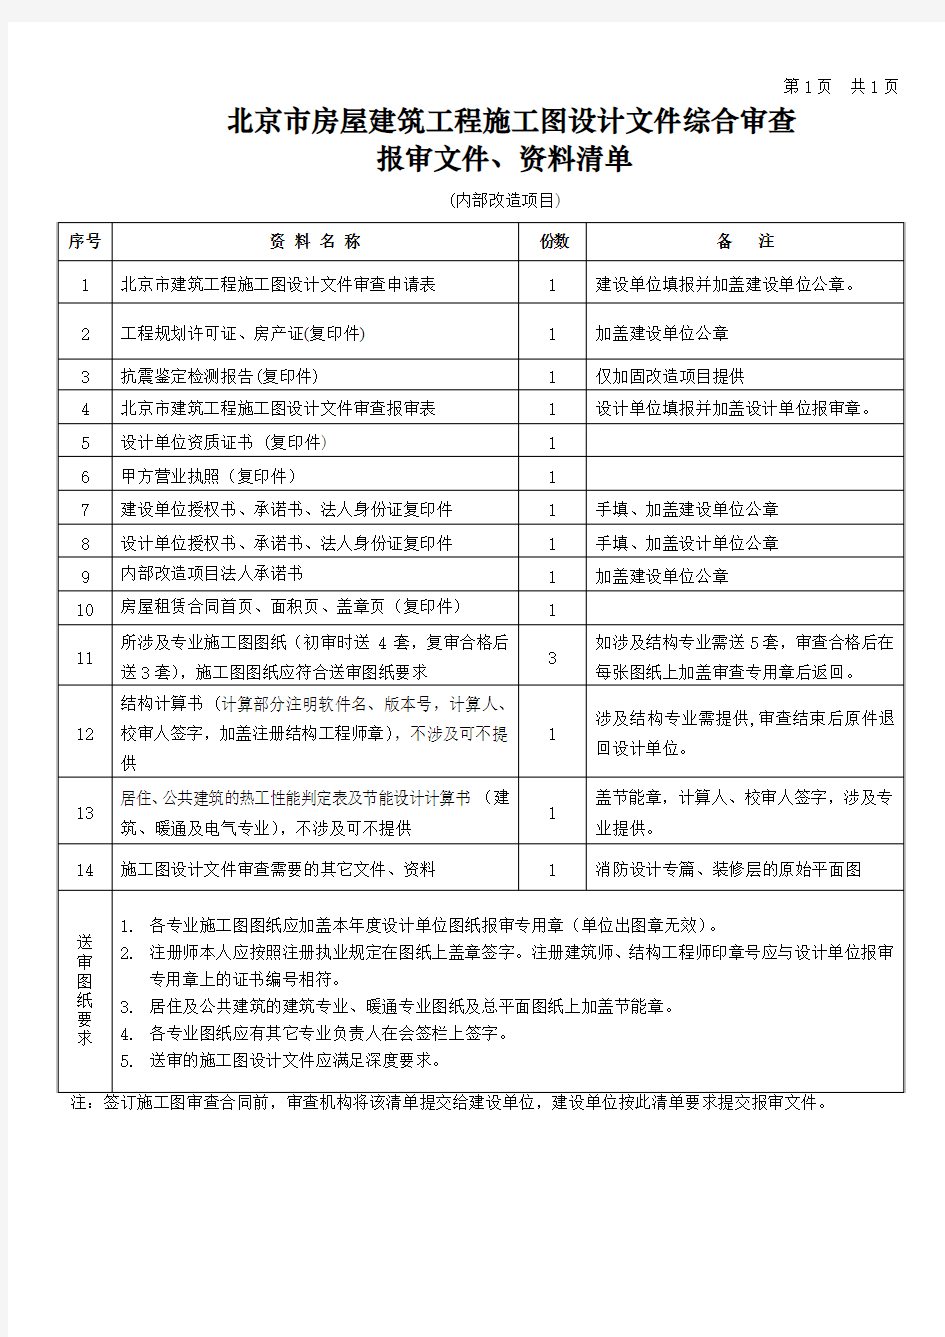 北京市房屋建筑工程施工图设计文件综合审查报审文件、资料清单 内部改造项目